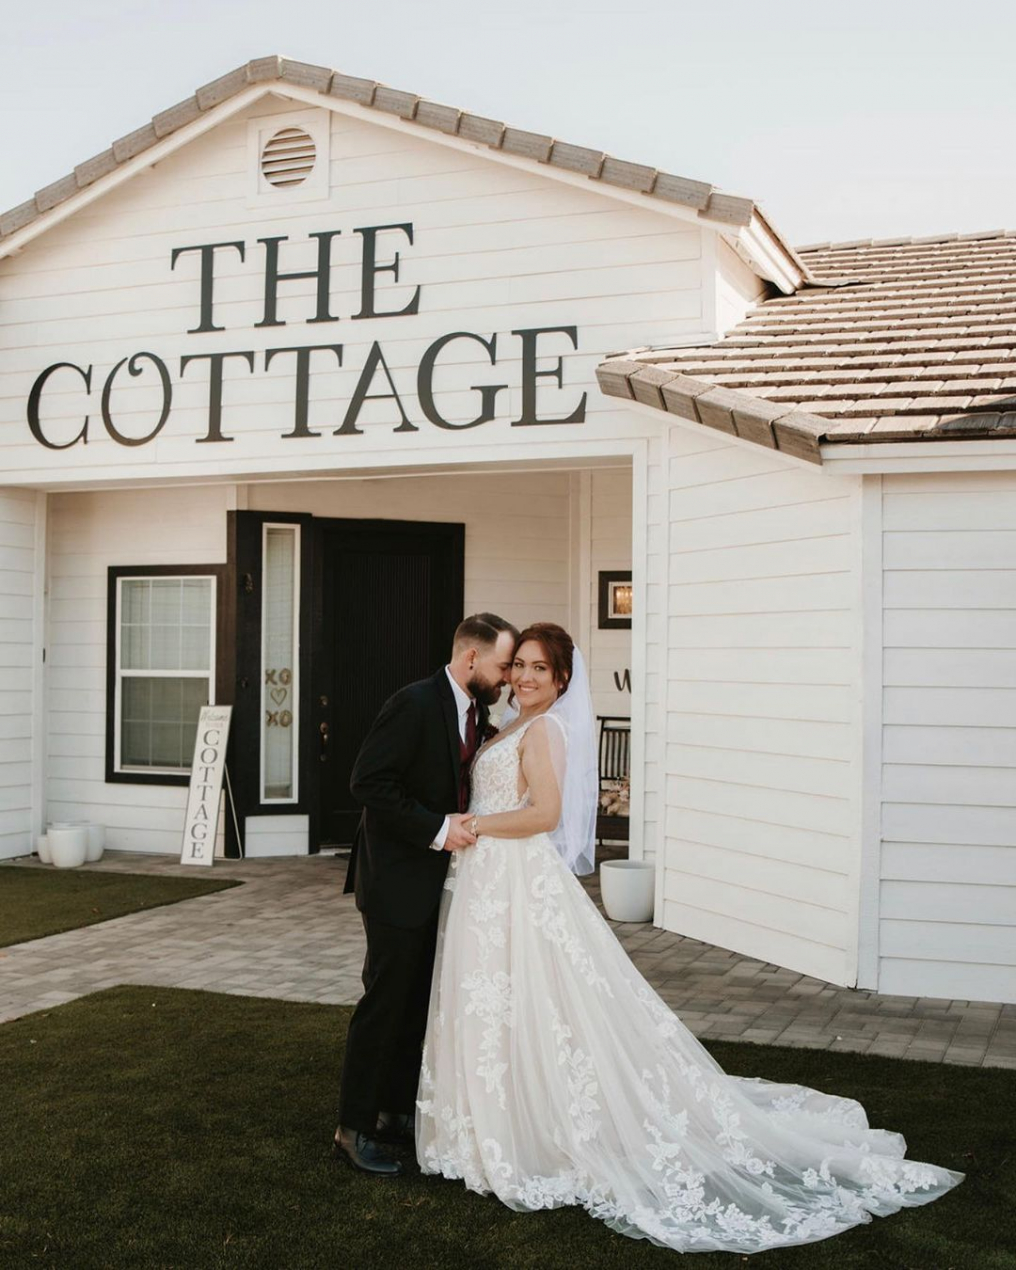 The Cottage Venue photo